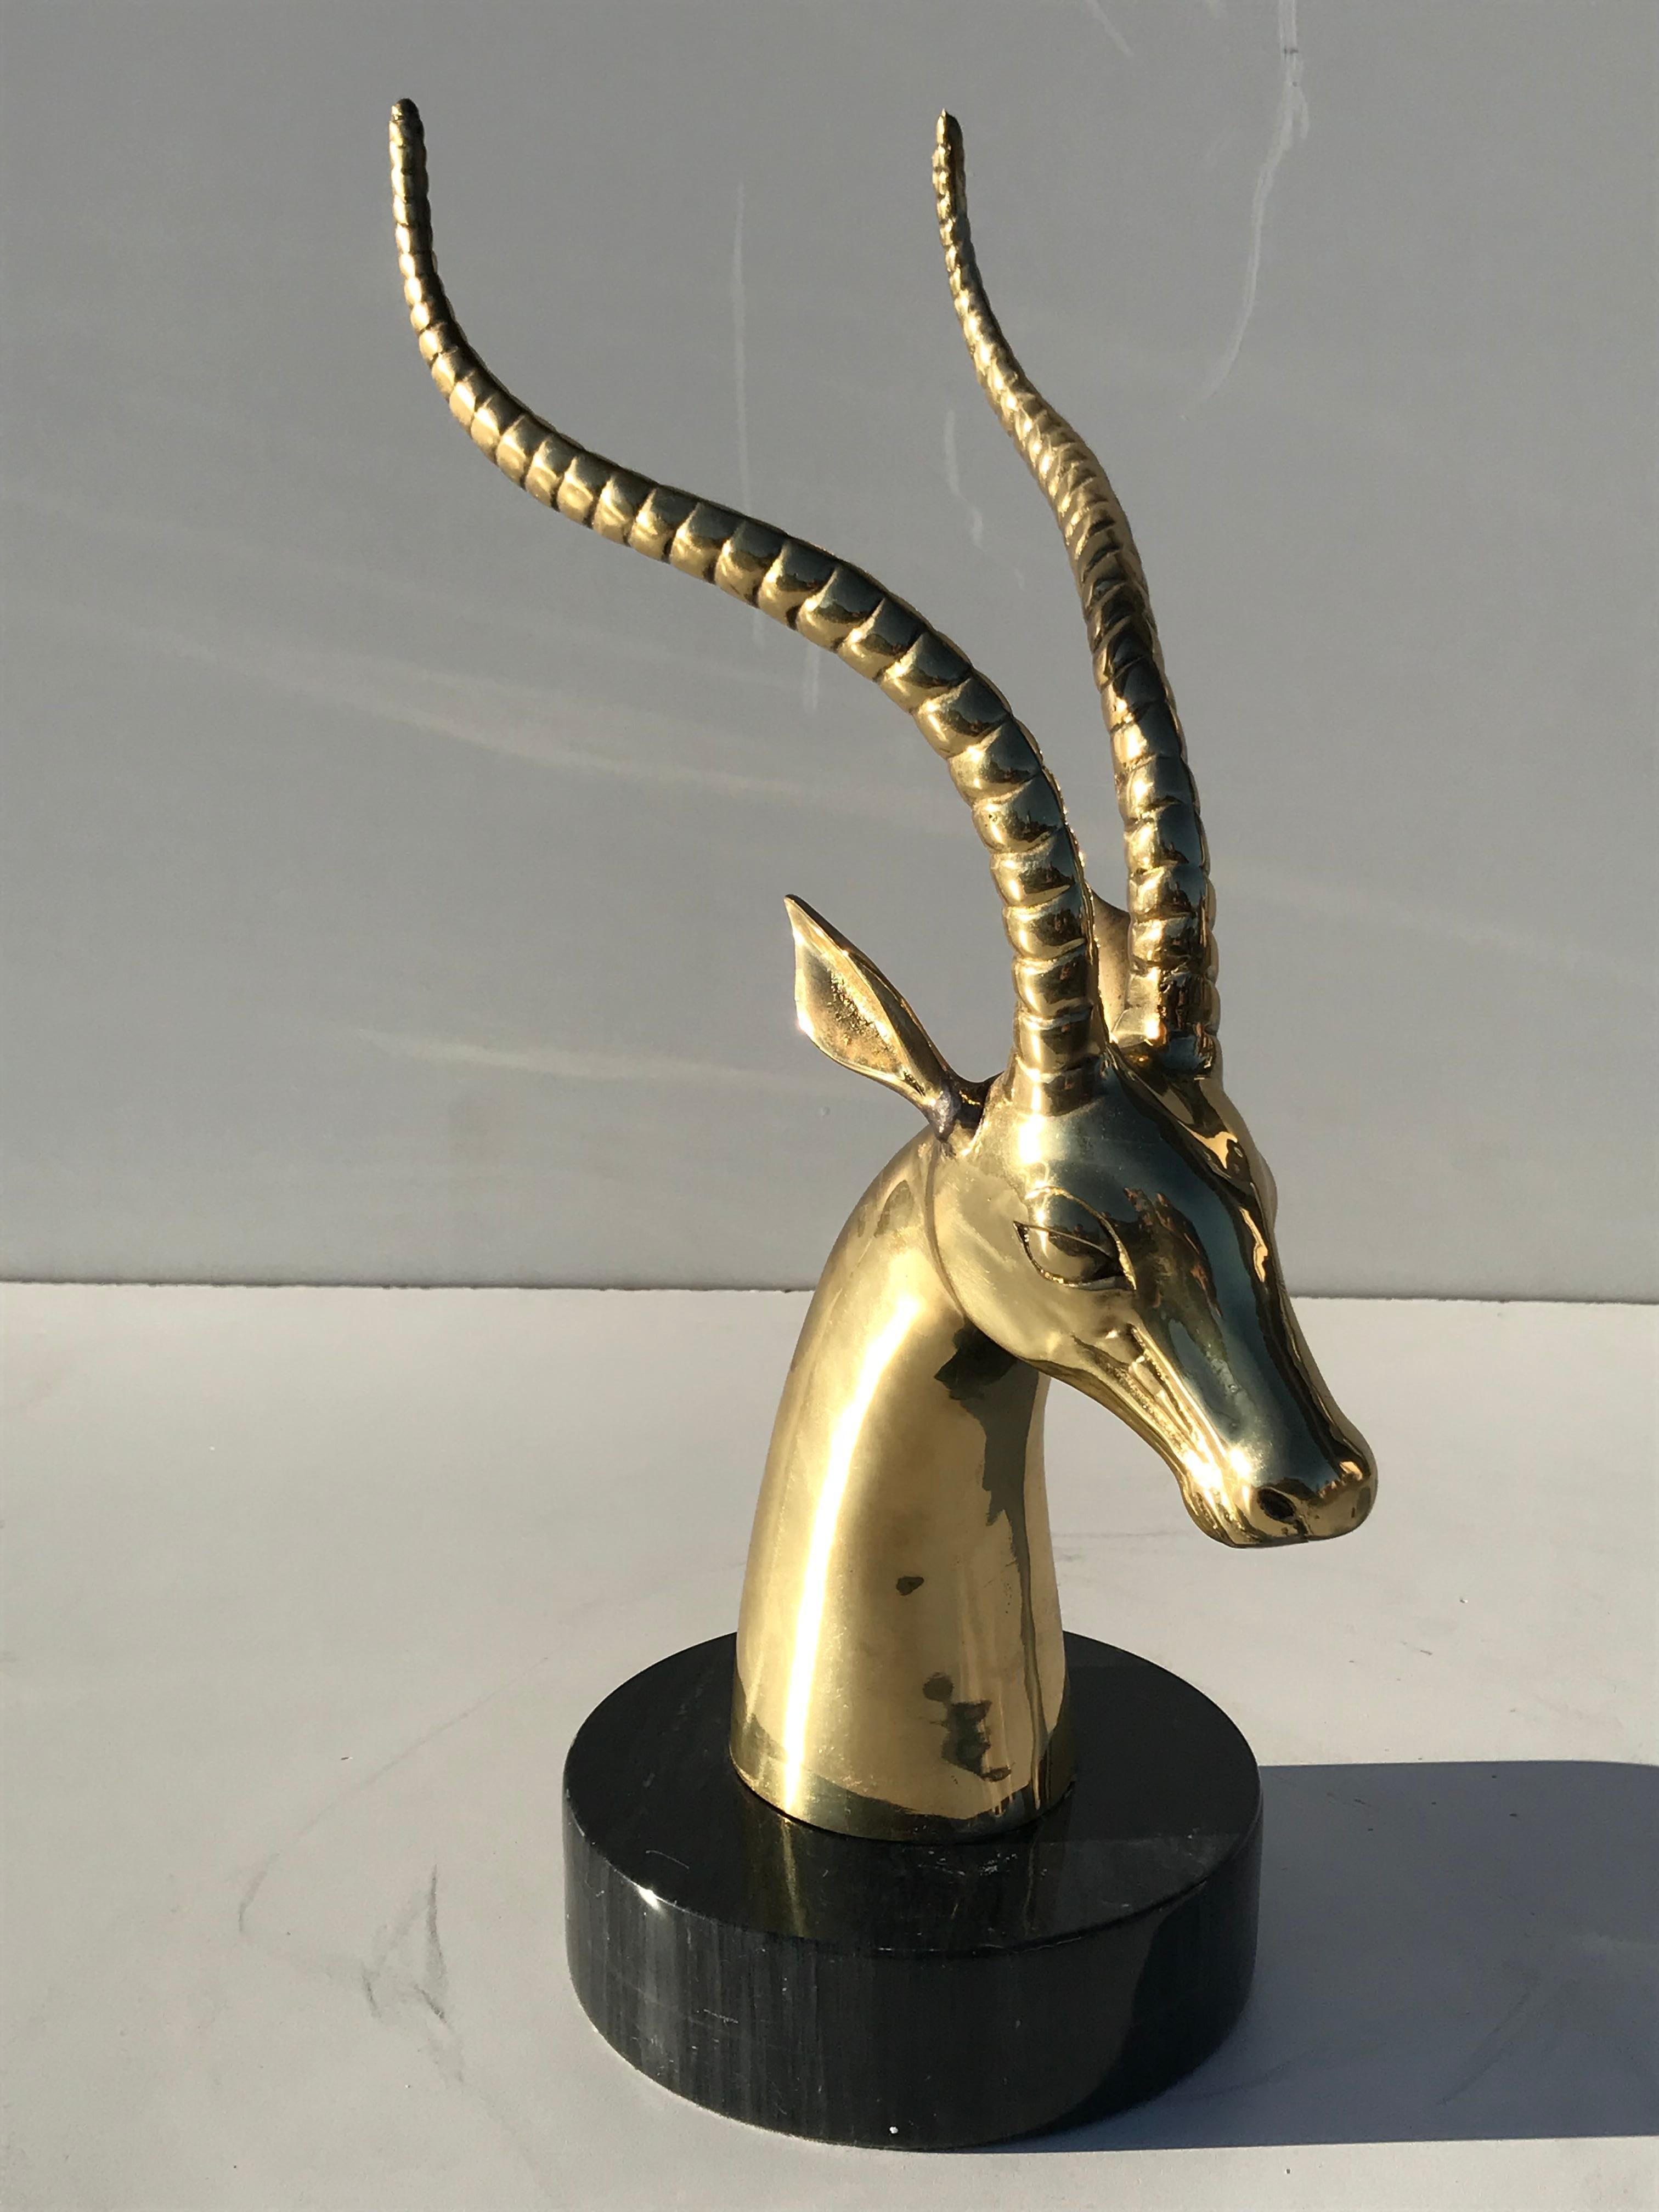 Brass antelope gazelle bookend sculpture.